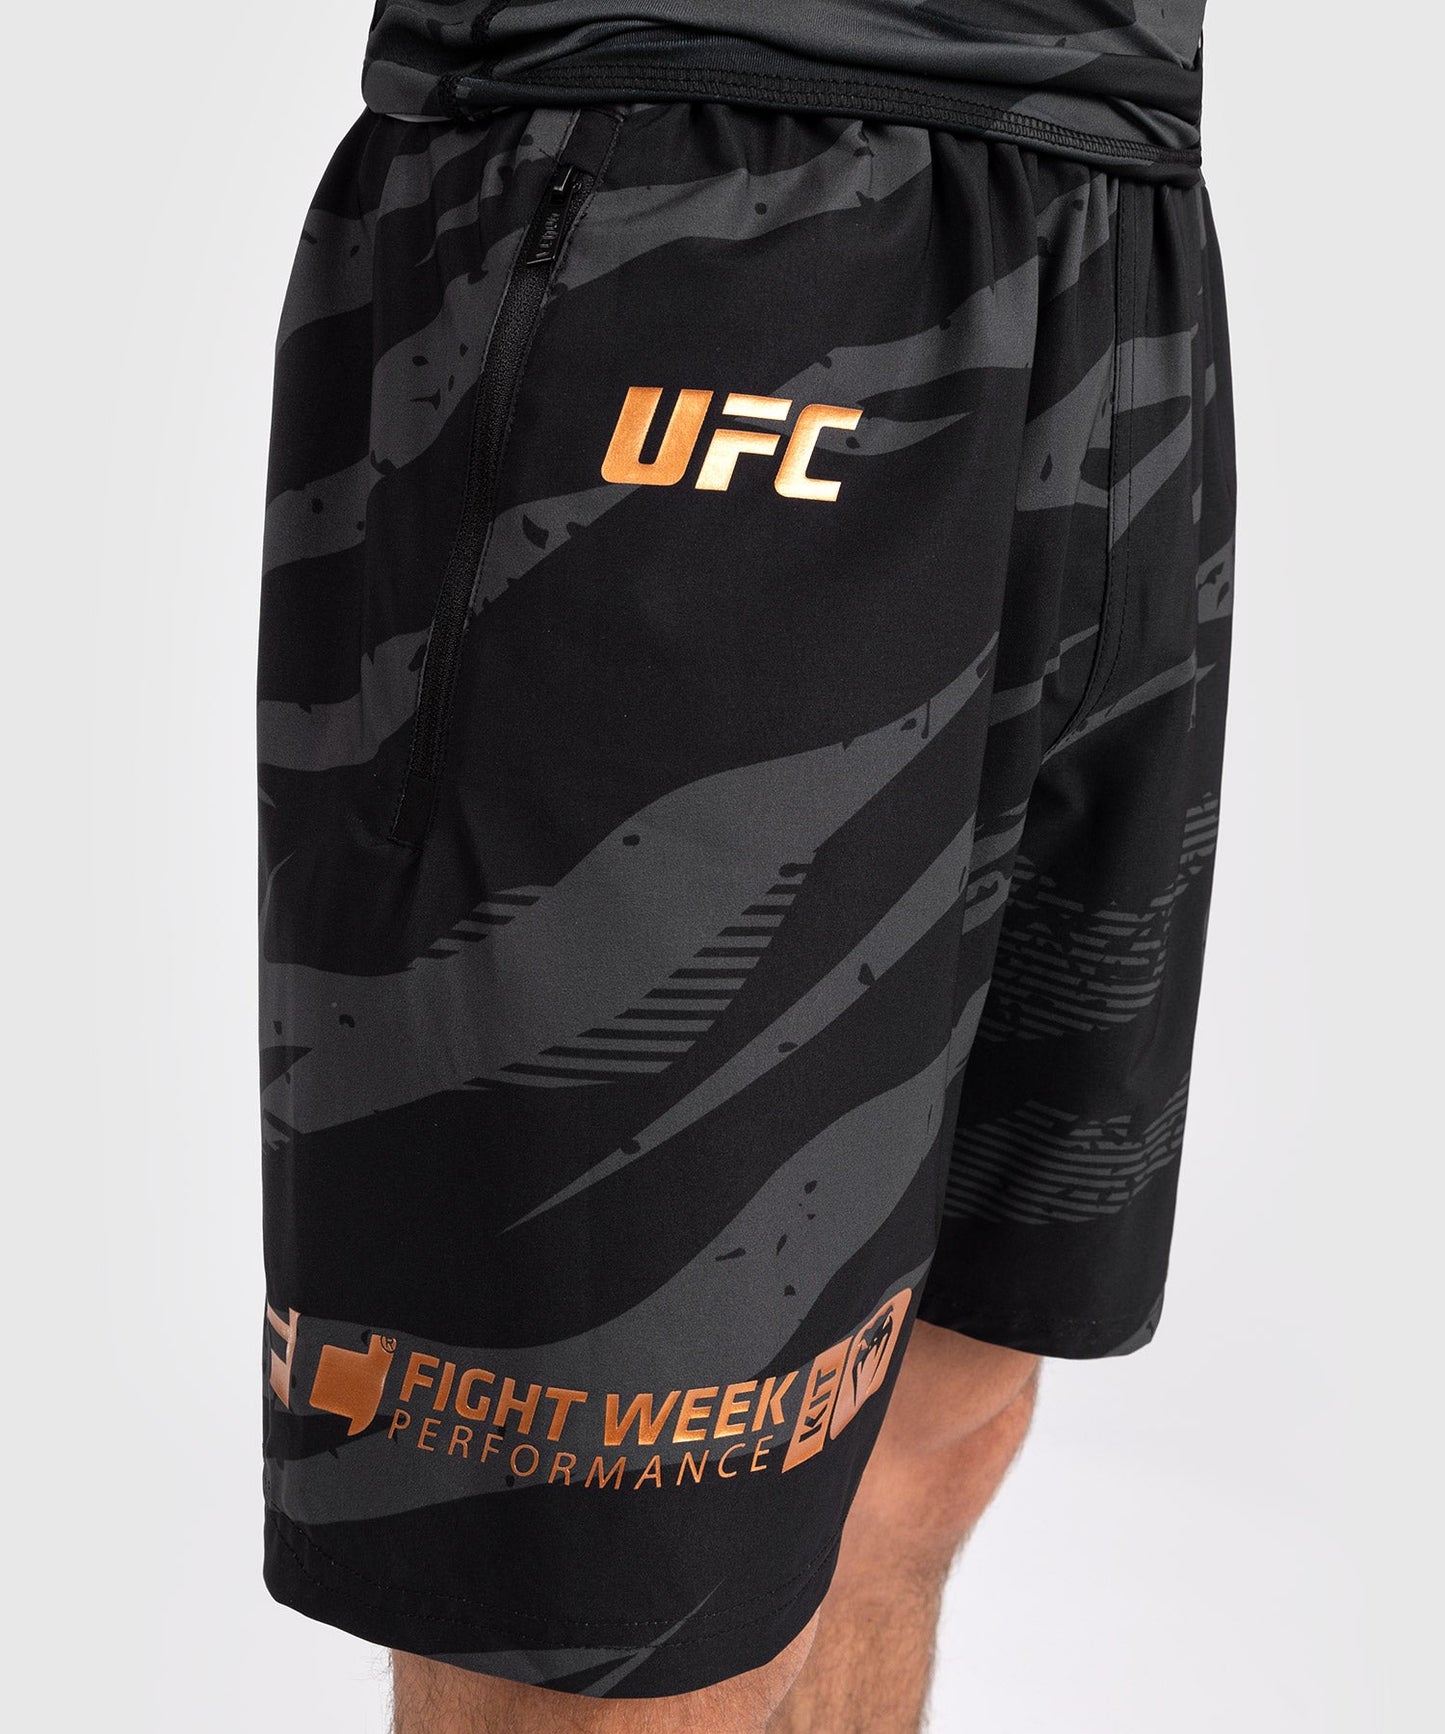 UFC Adrenaline by Venum Fight Week Performance Shorts Für Männer - Urban Camo